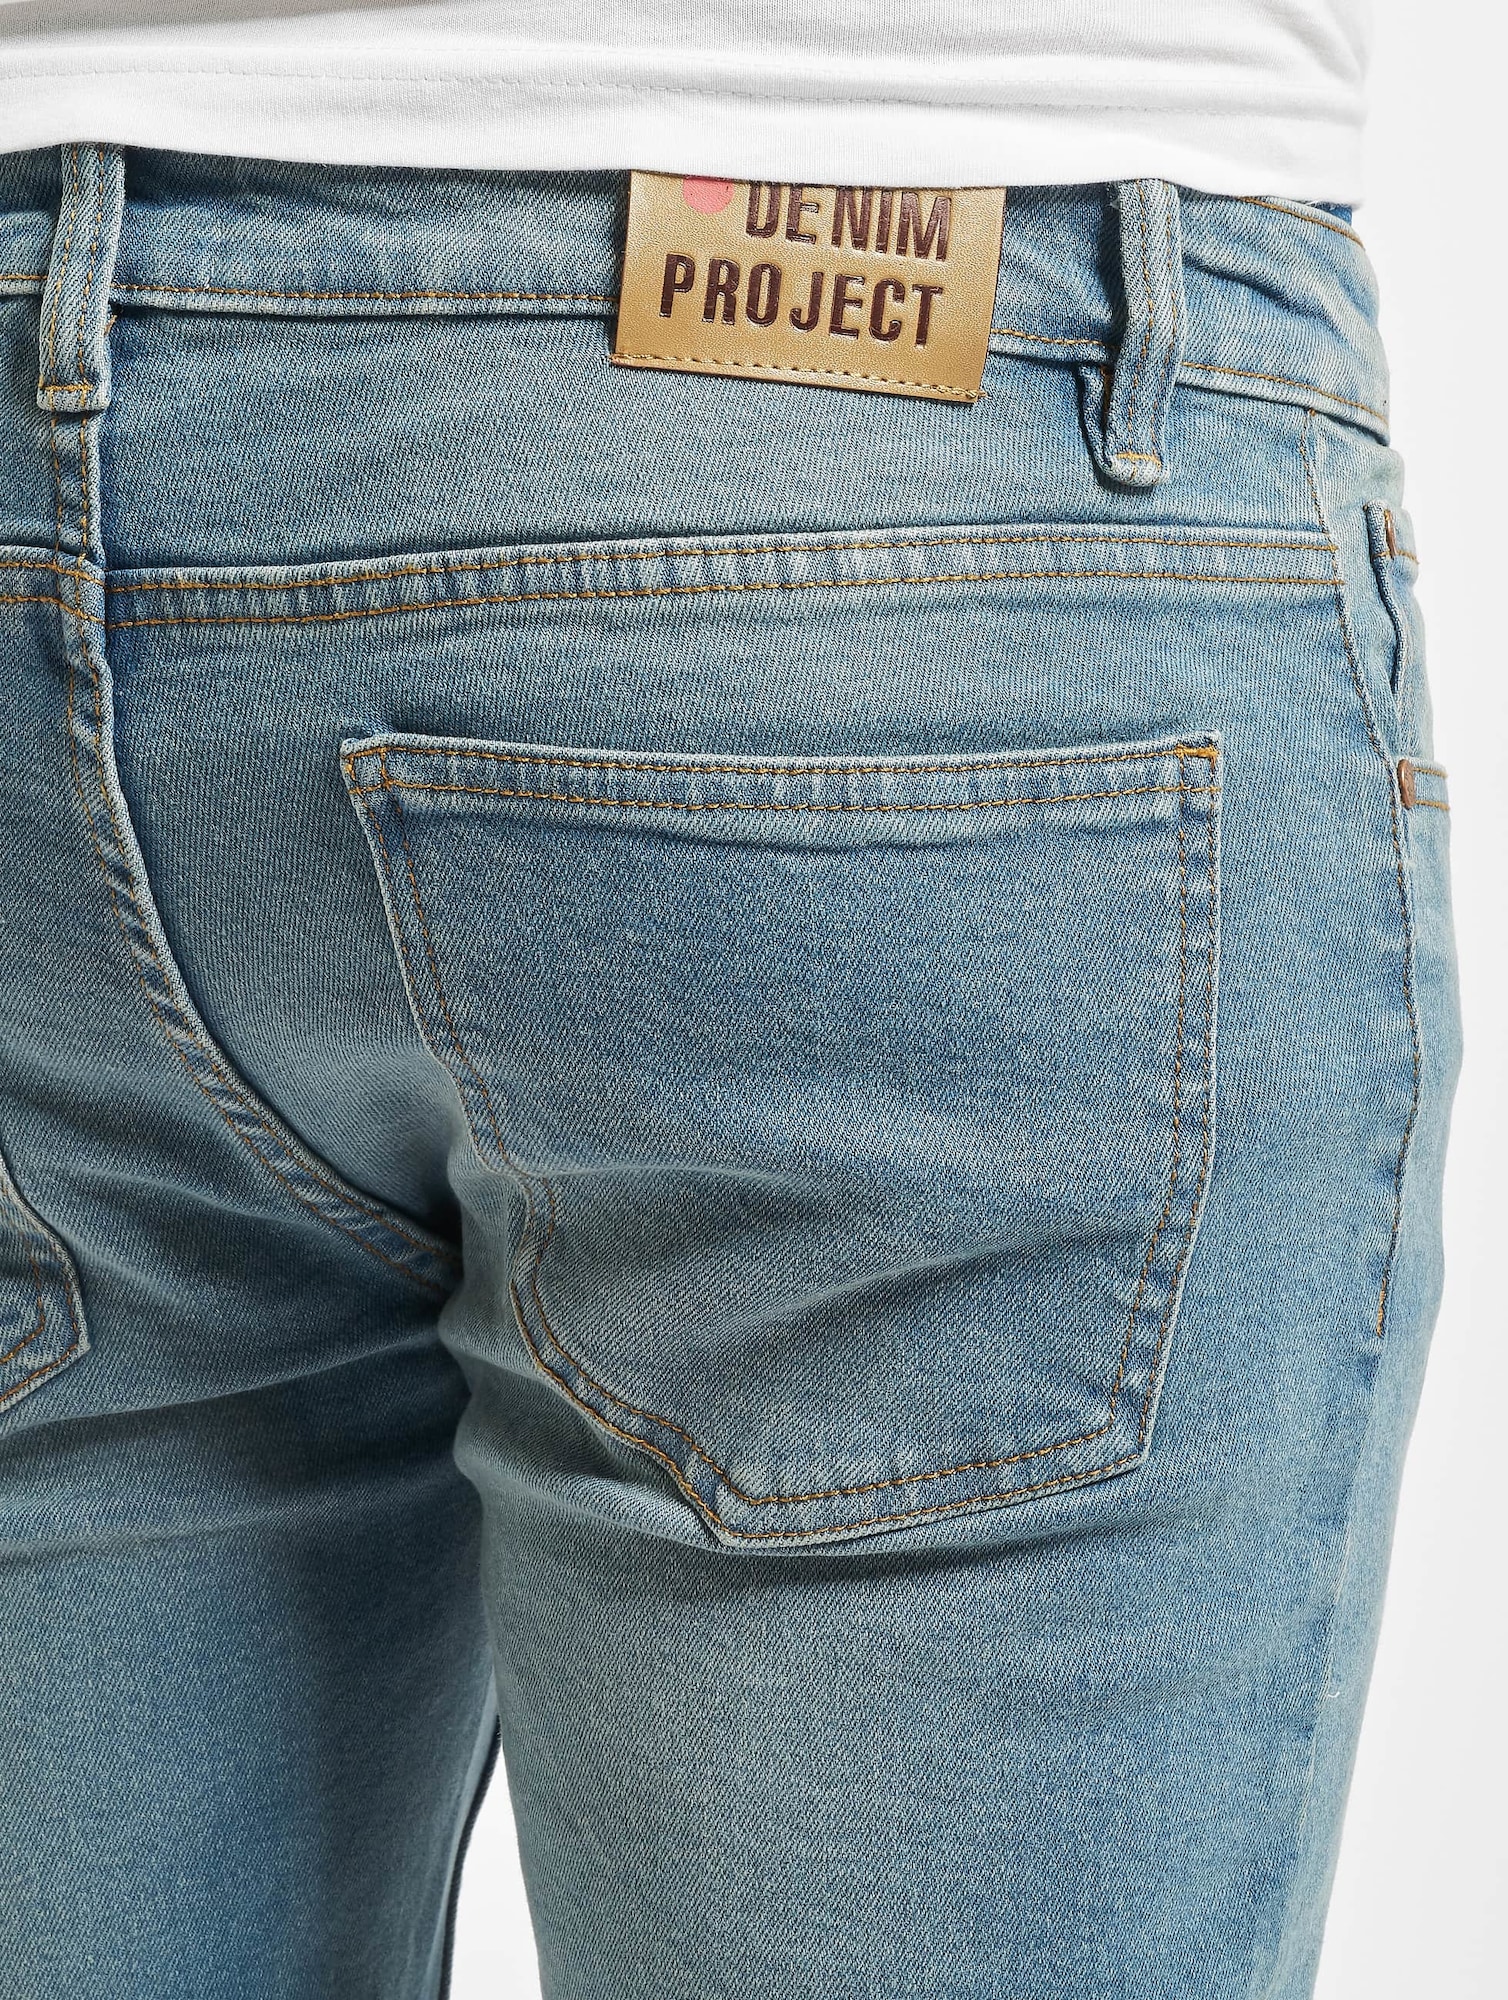 Jeans 'Mr. Red' von Denim Project